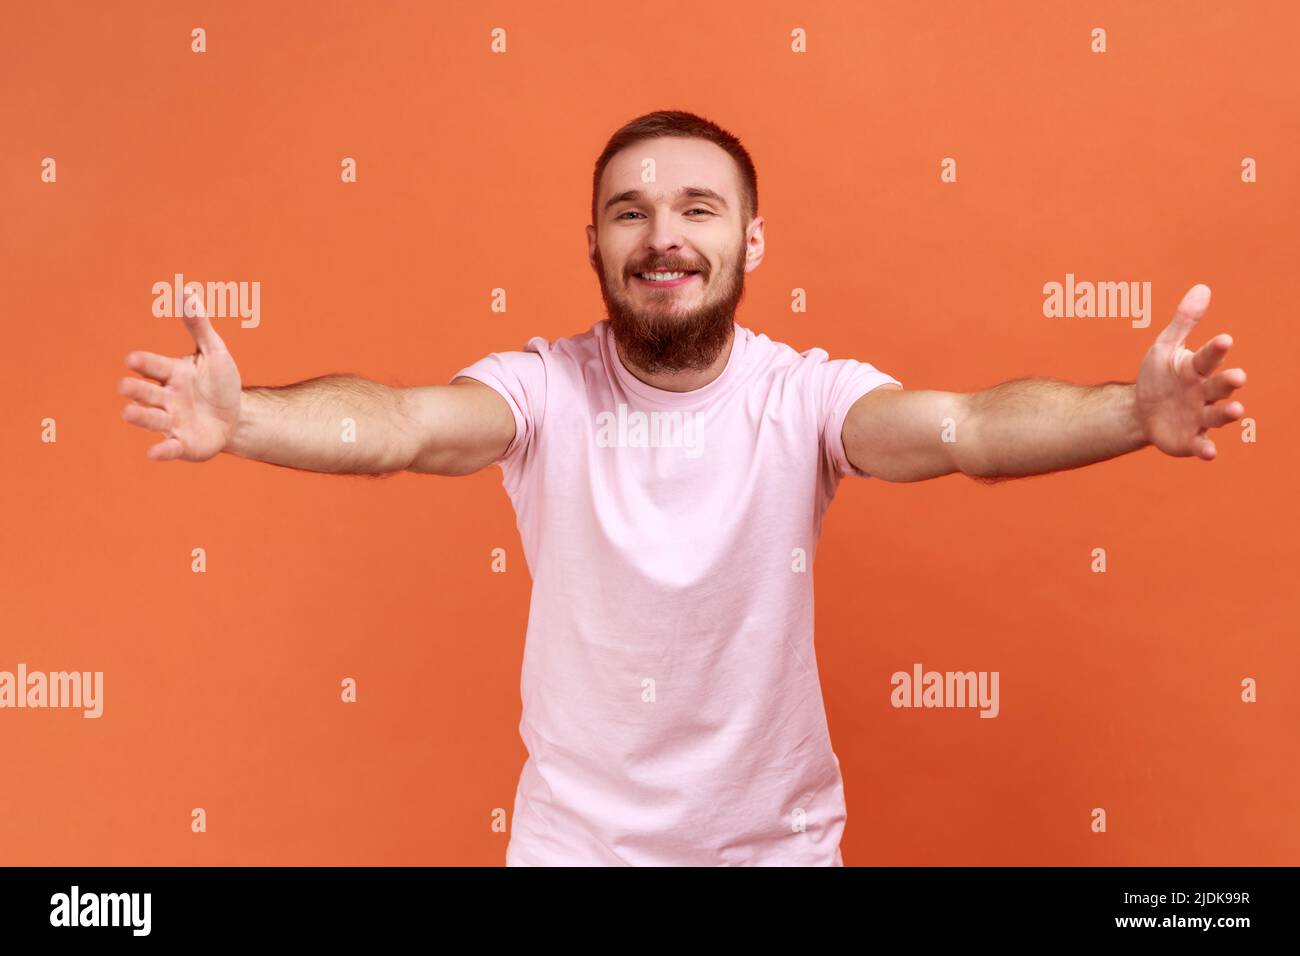 Entrez dans mes bras. Portrait d'un homme barbu heureux et positif qui se fixe à l'appareil photo, qui s'étire les bras pour vous embrasser, en portant un T-shirt rose. Studio d'intérieur isolé sur fond orange. Banque D'Images